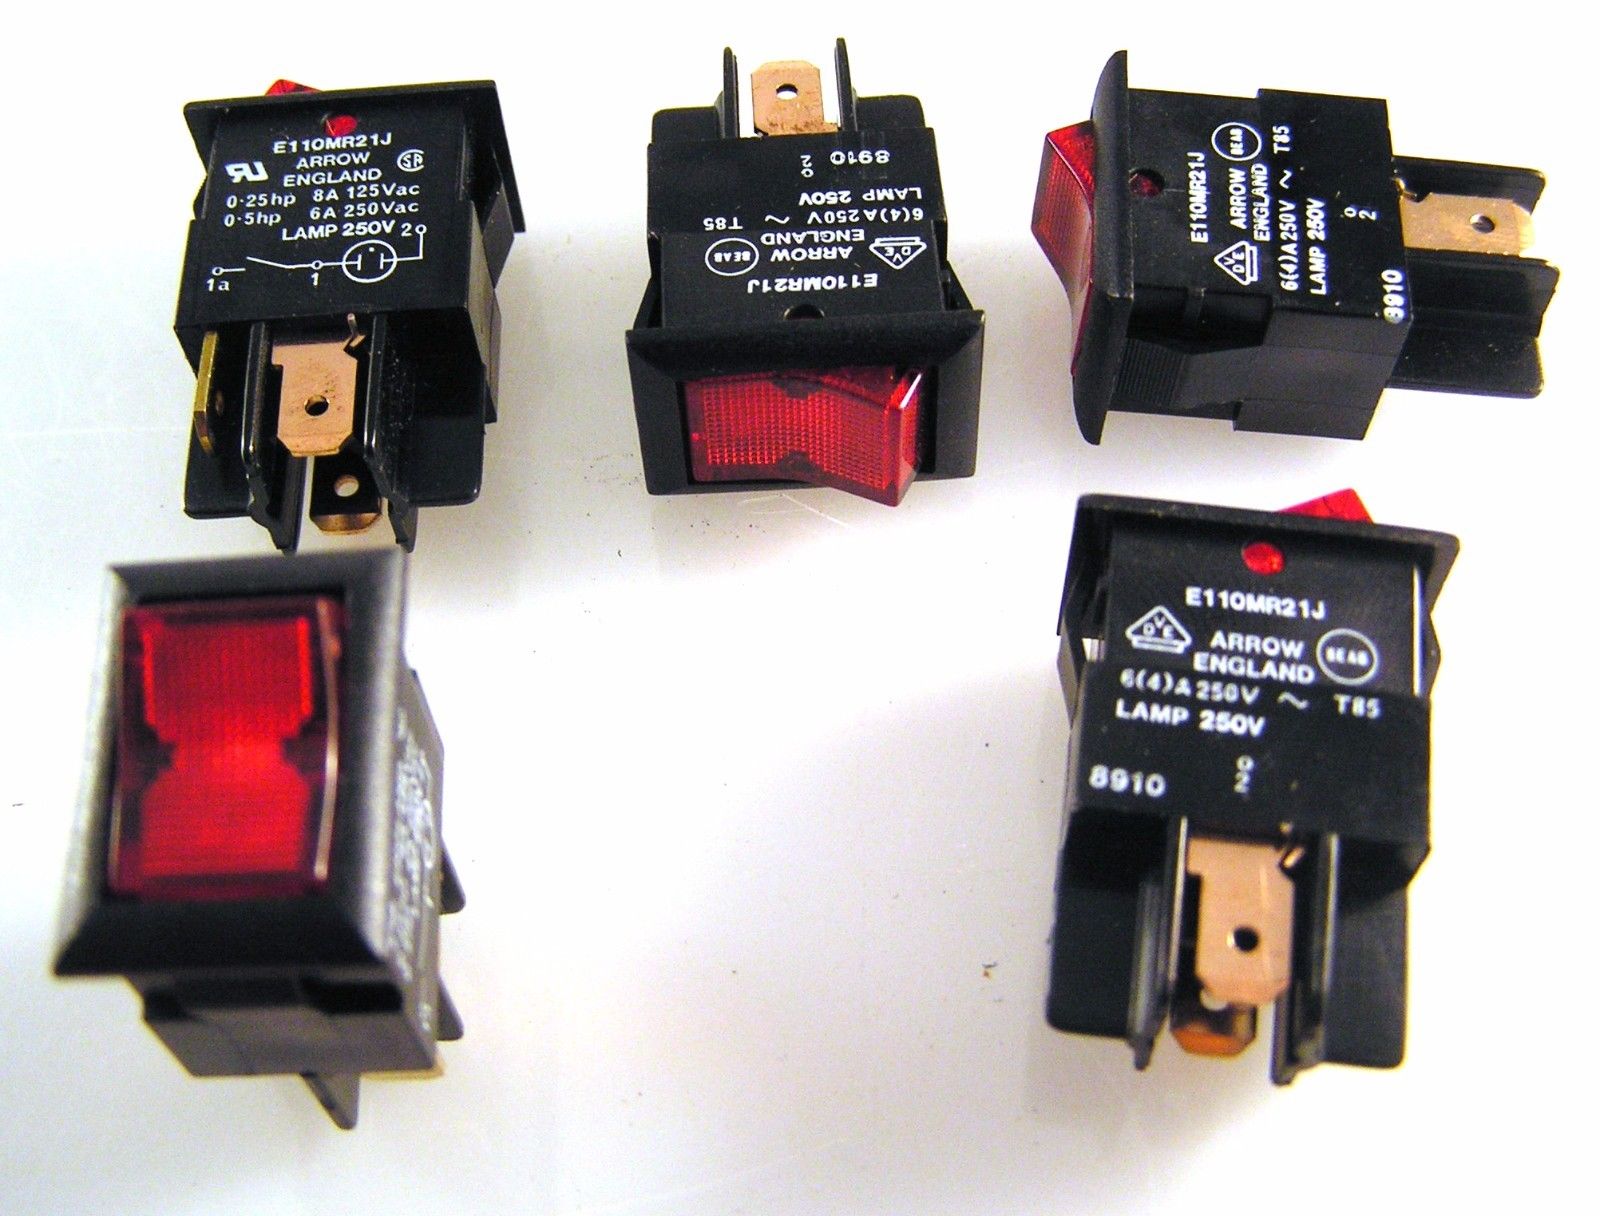 Arrow E110MR21J Illuminated Red Rocker Switch 6A 250VAC SPST OnOff 5 Pcs OM0588 